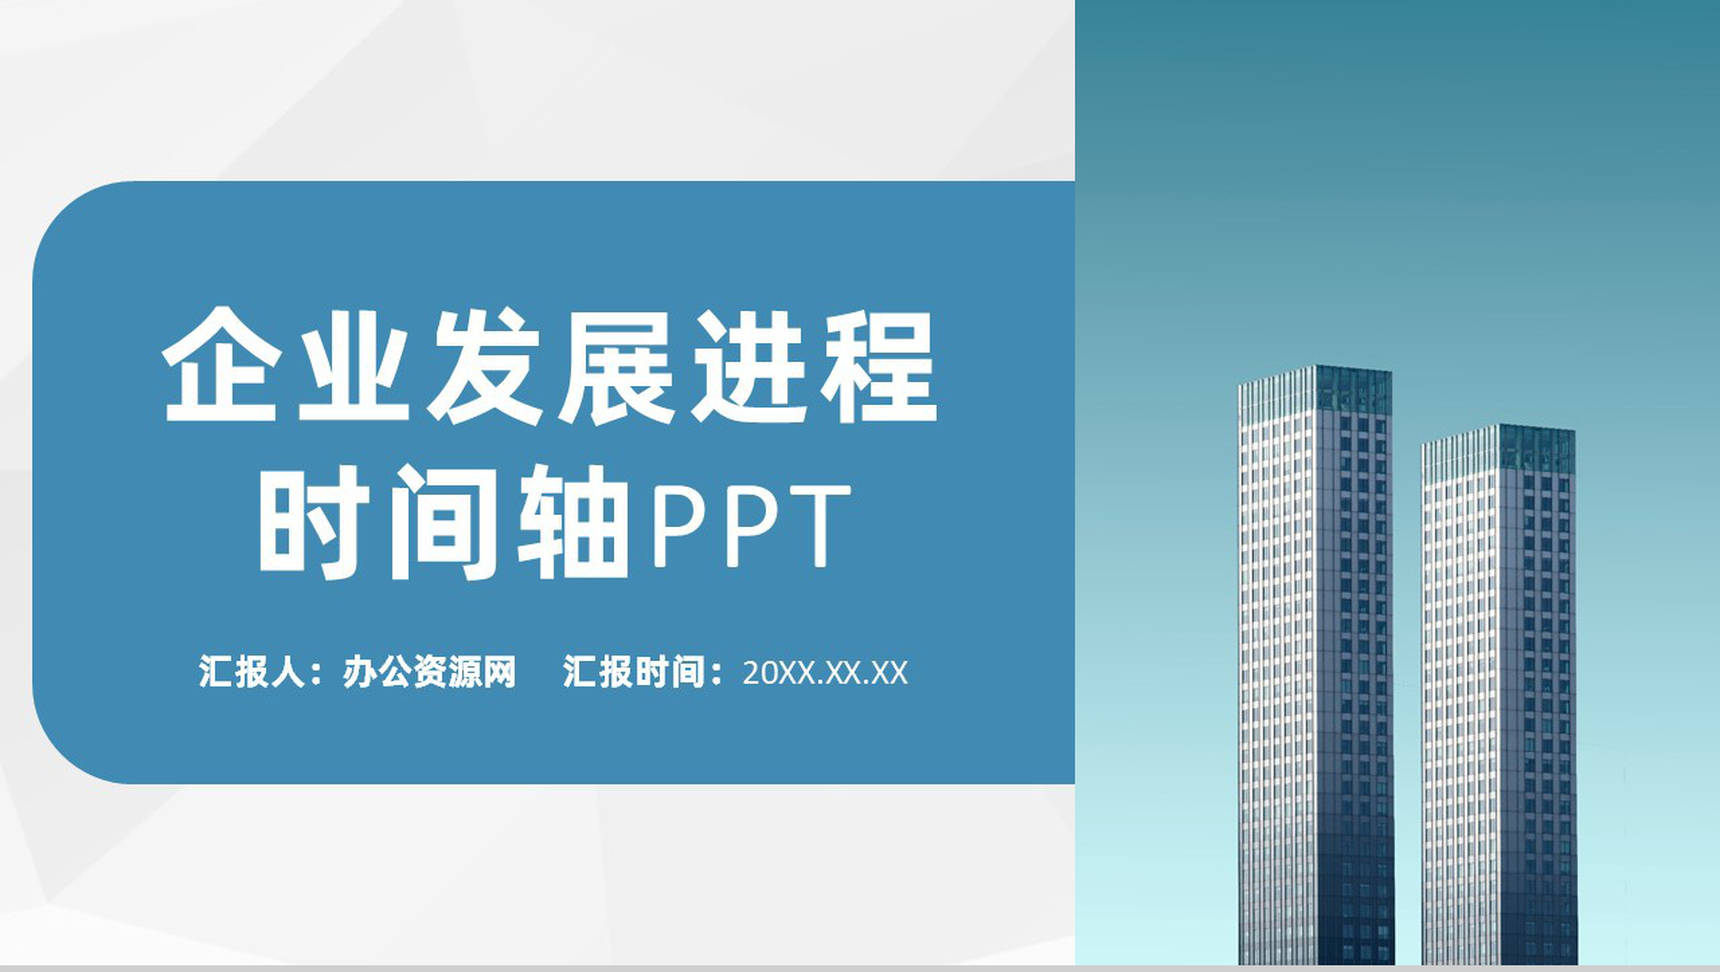 浅蓝色商务风格企业公司发展进程时间轴PPT模板-1